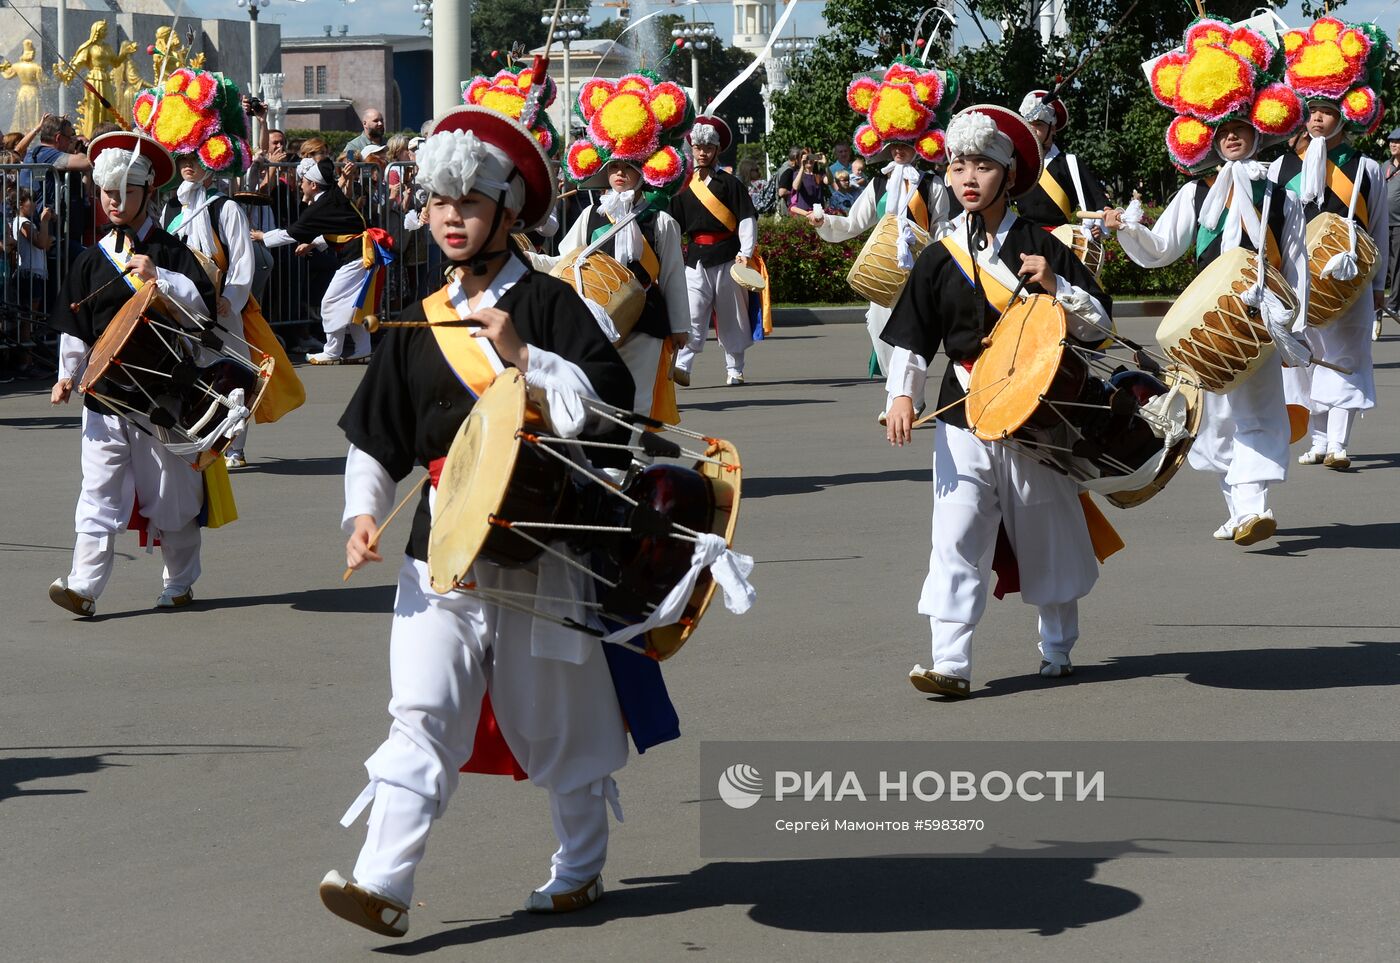 Торжественное шествие участников фестиваля "Спасская башня" на ВДНХ